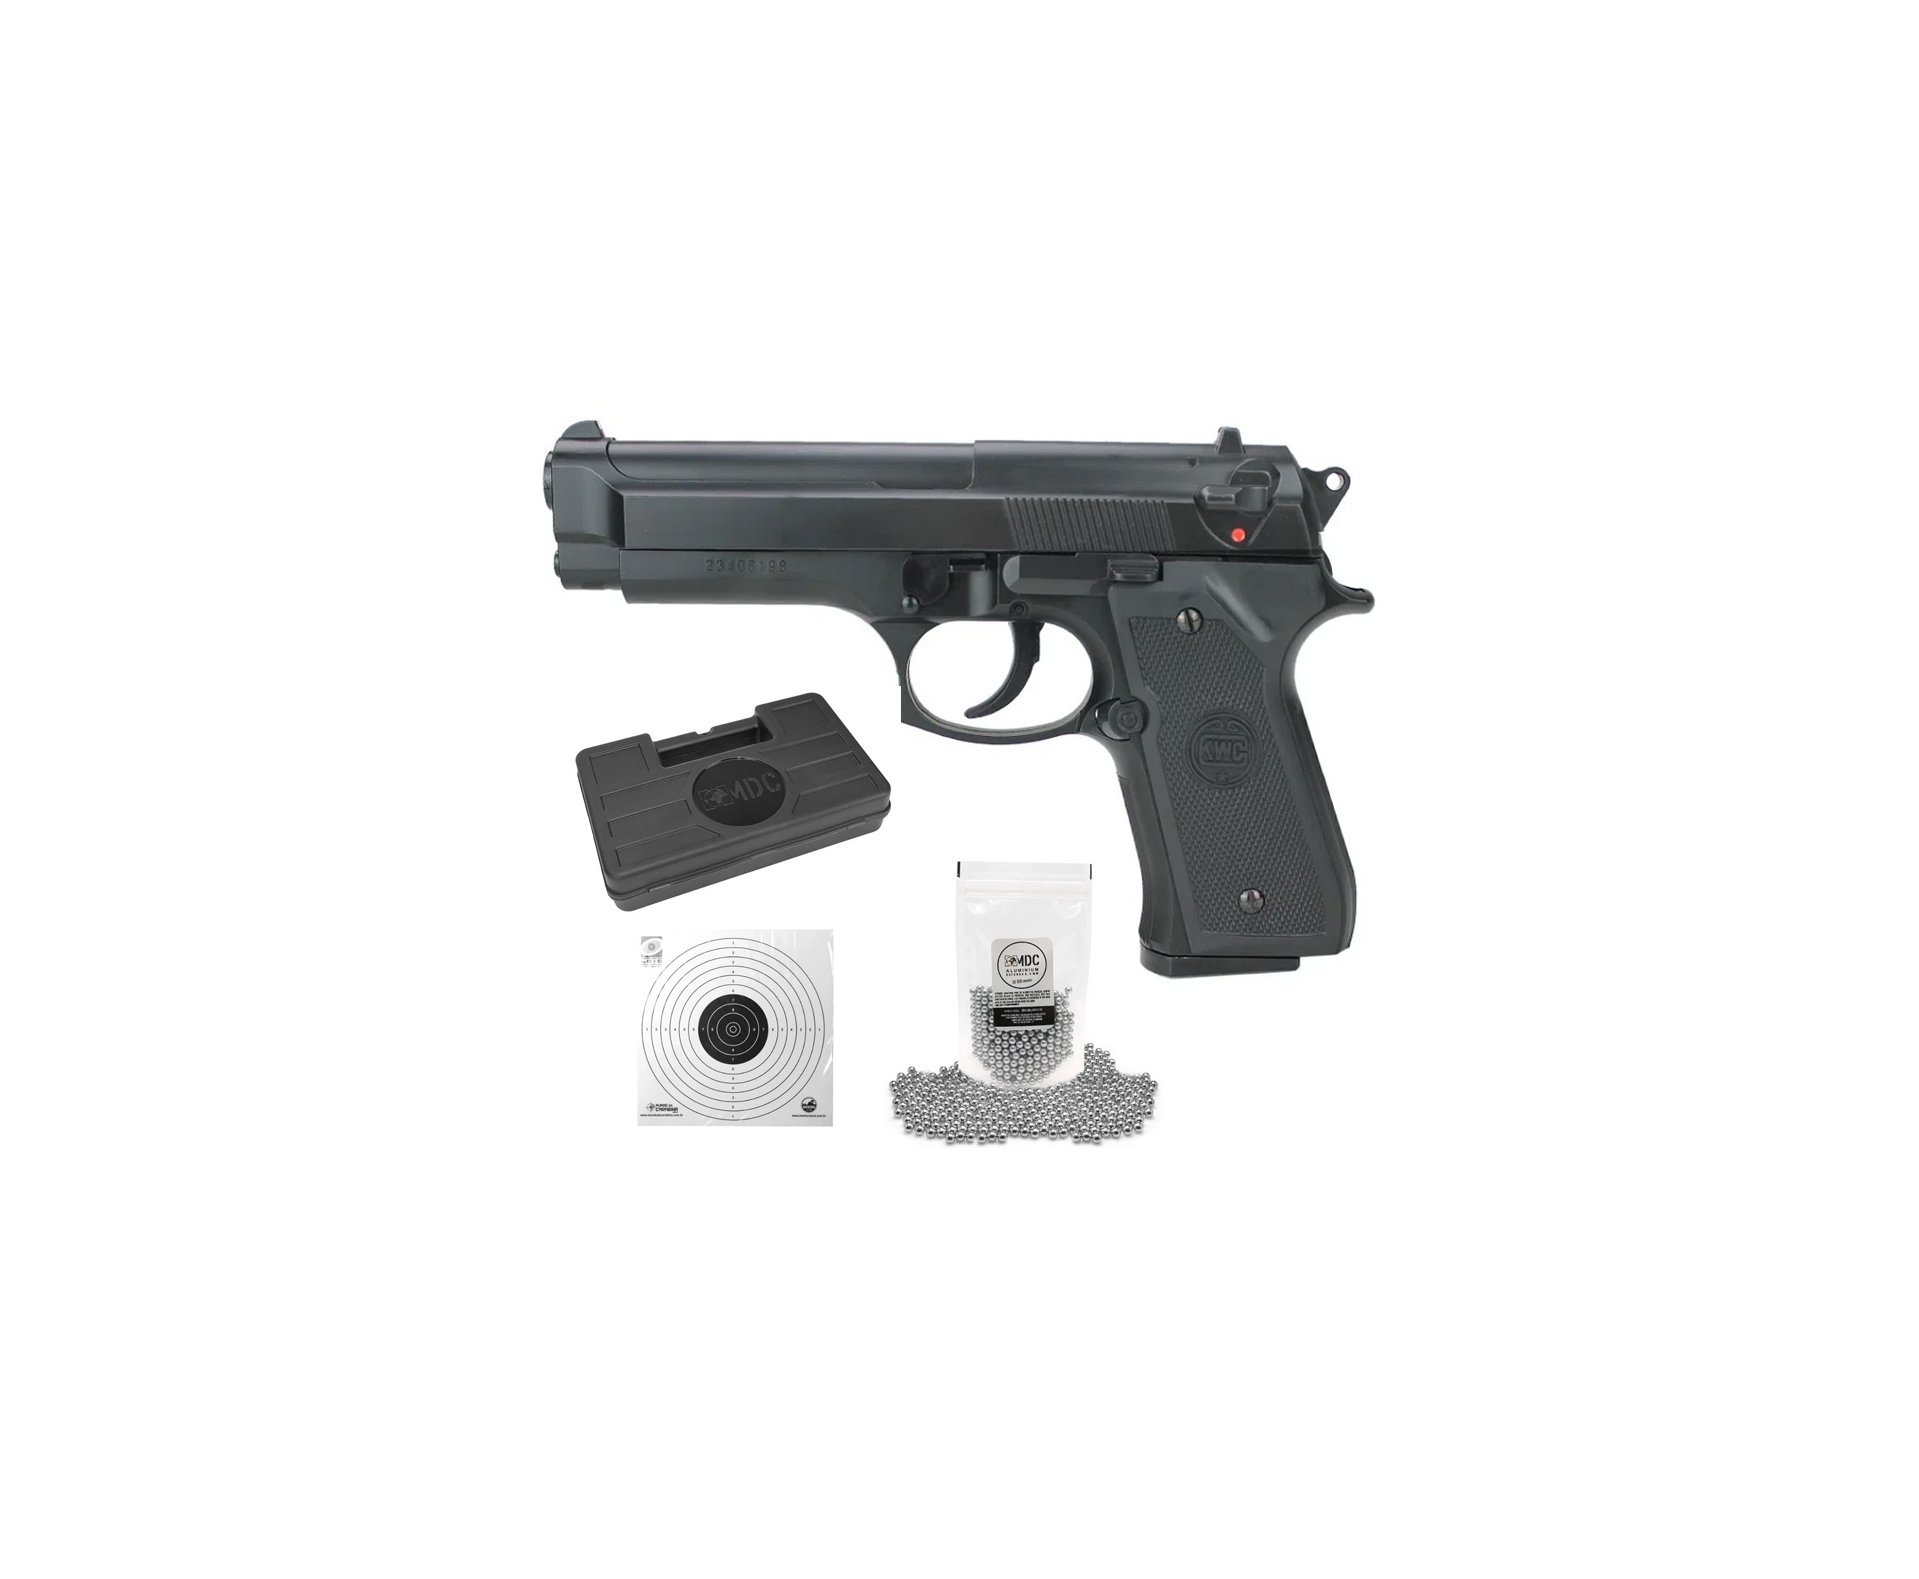 Pistola de Pressão Spring M92 6mm - KWC + Munição + Case + Alvos